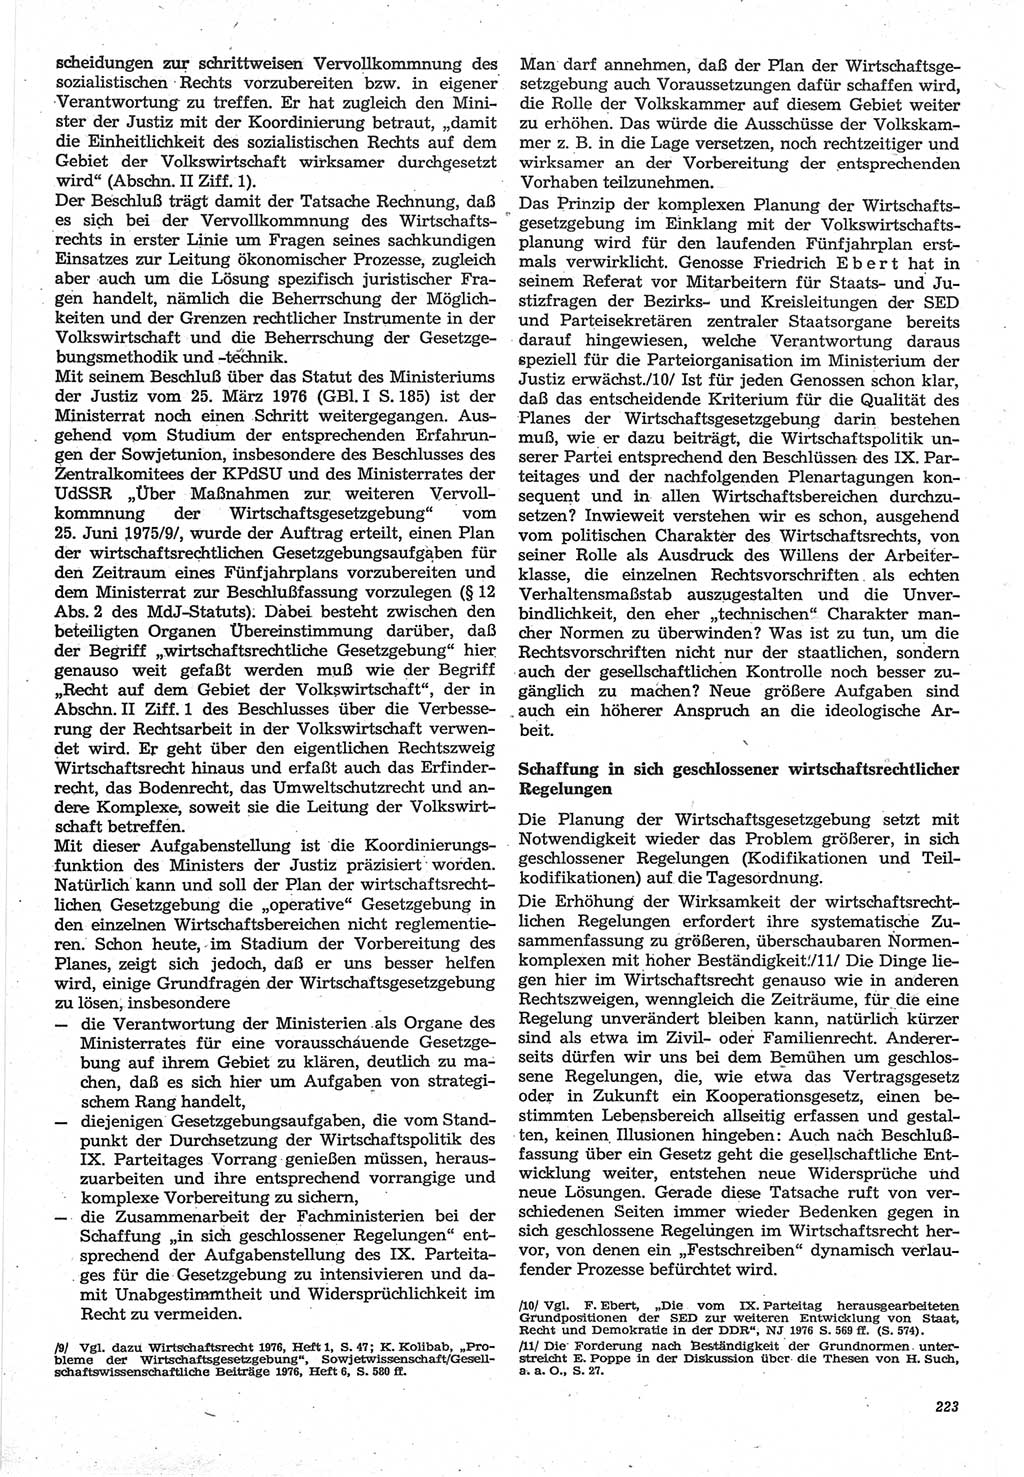 Neue Justiz (NJ), Zeitschrift für Recht und Rechtswissenschaft-Zeitschrift, sozialistisches Recht und Gesetzlichkeit, 31. Jahrgang 1977, Seite 223 (NJ DDR 1977, S. 223)